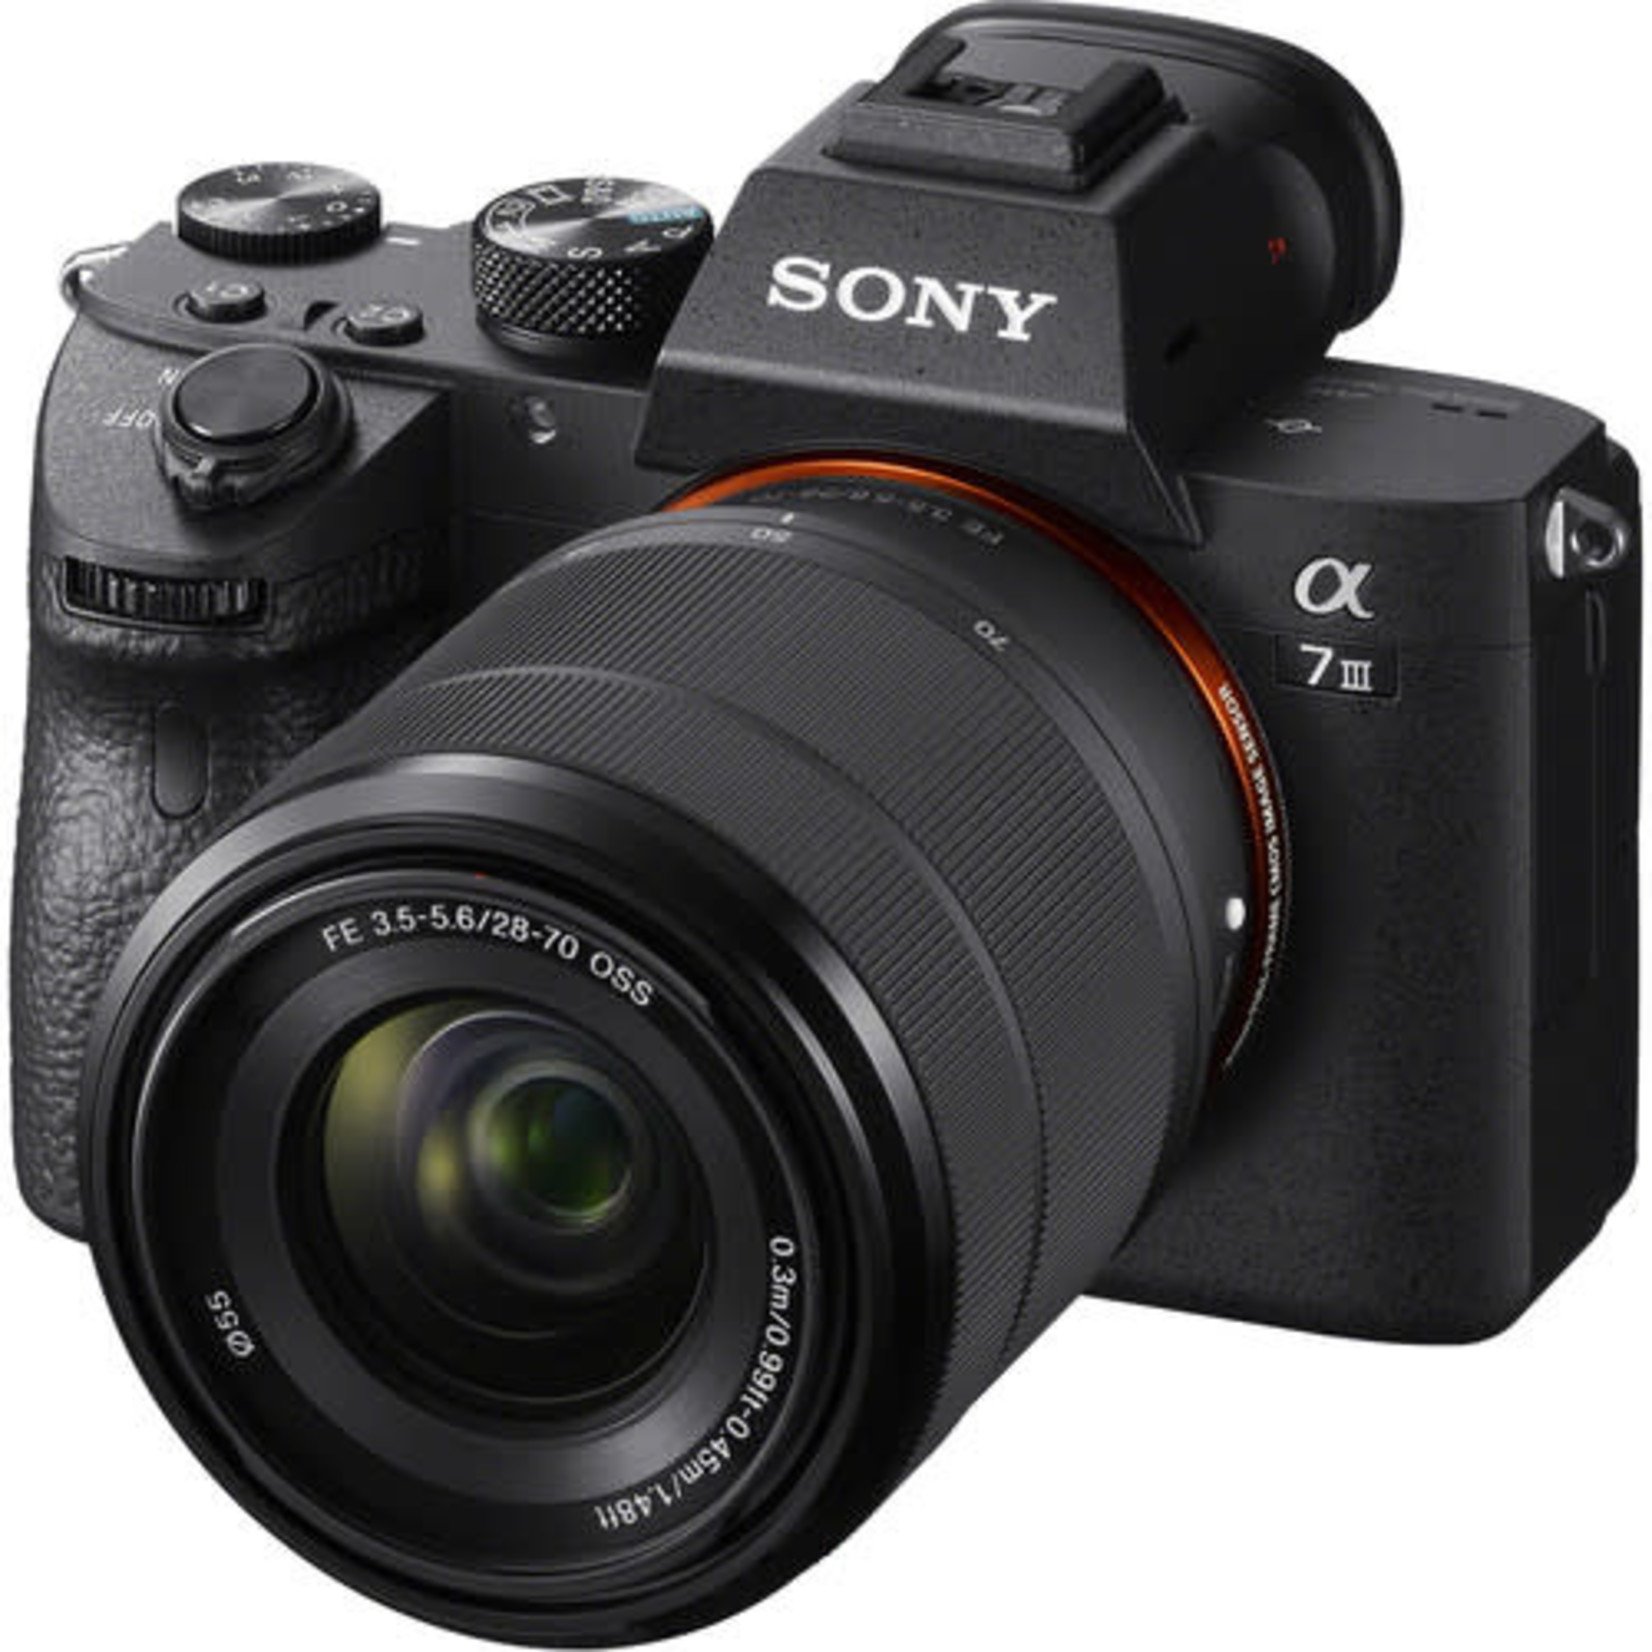 Sony Sony Alpha a7 III Mirrorless Digital Camera w/ 28-70mm Lens